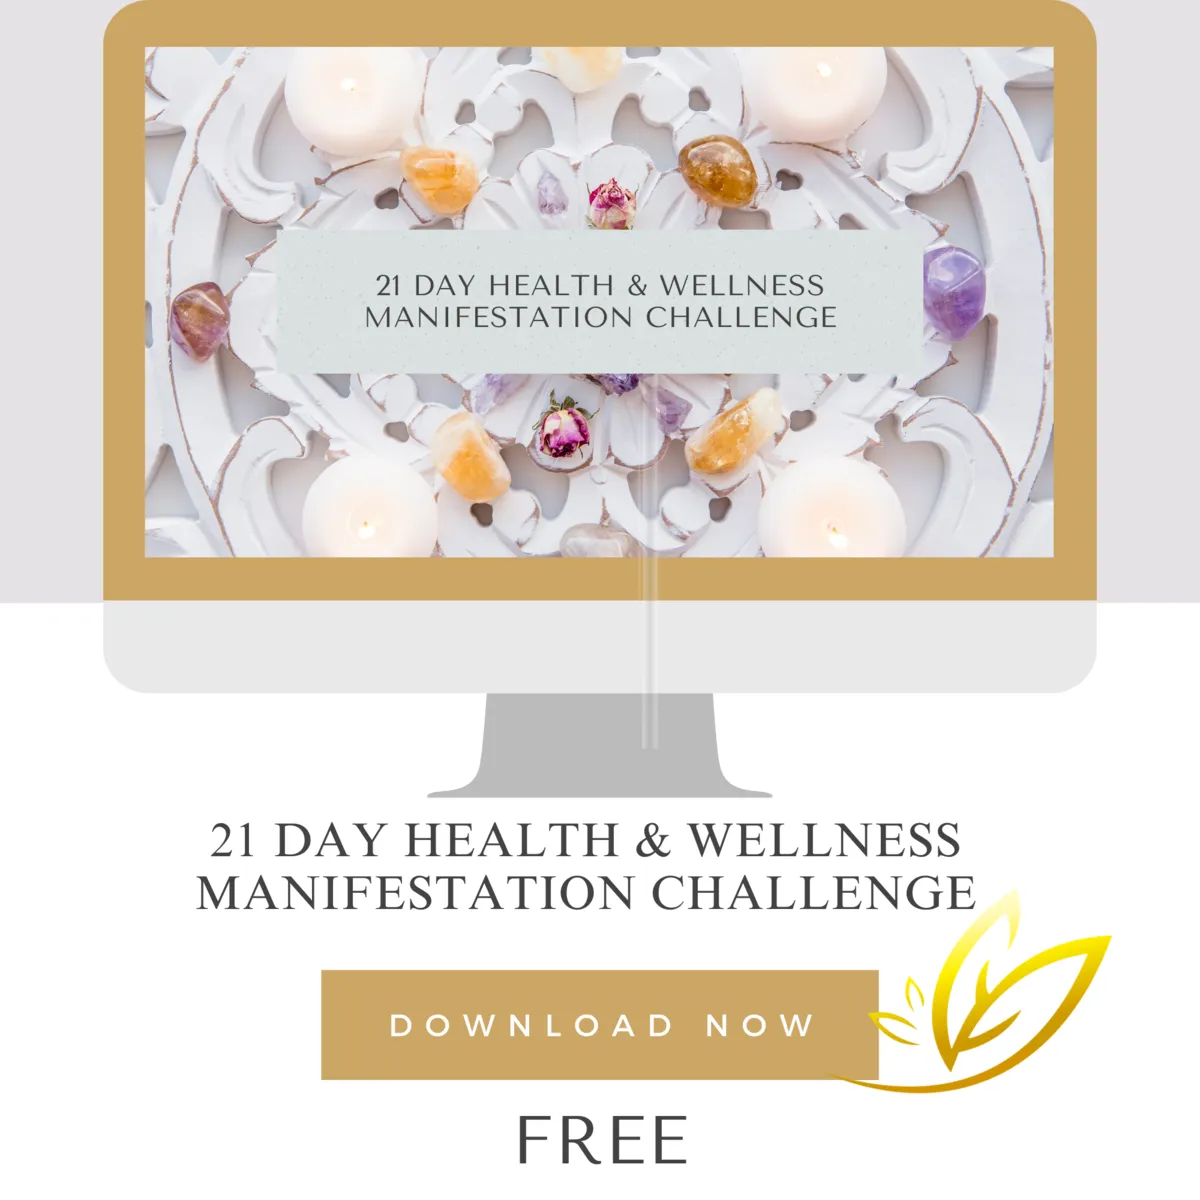 FREE 21 Day Health & Wellbeing Manifestation Challenge